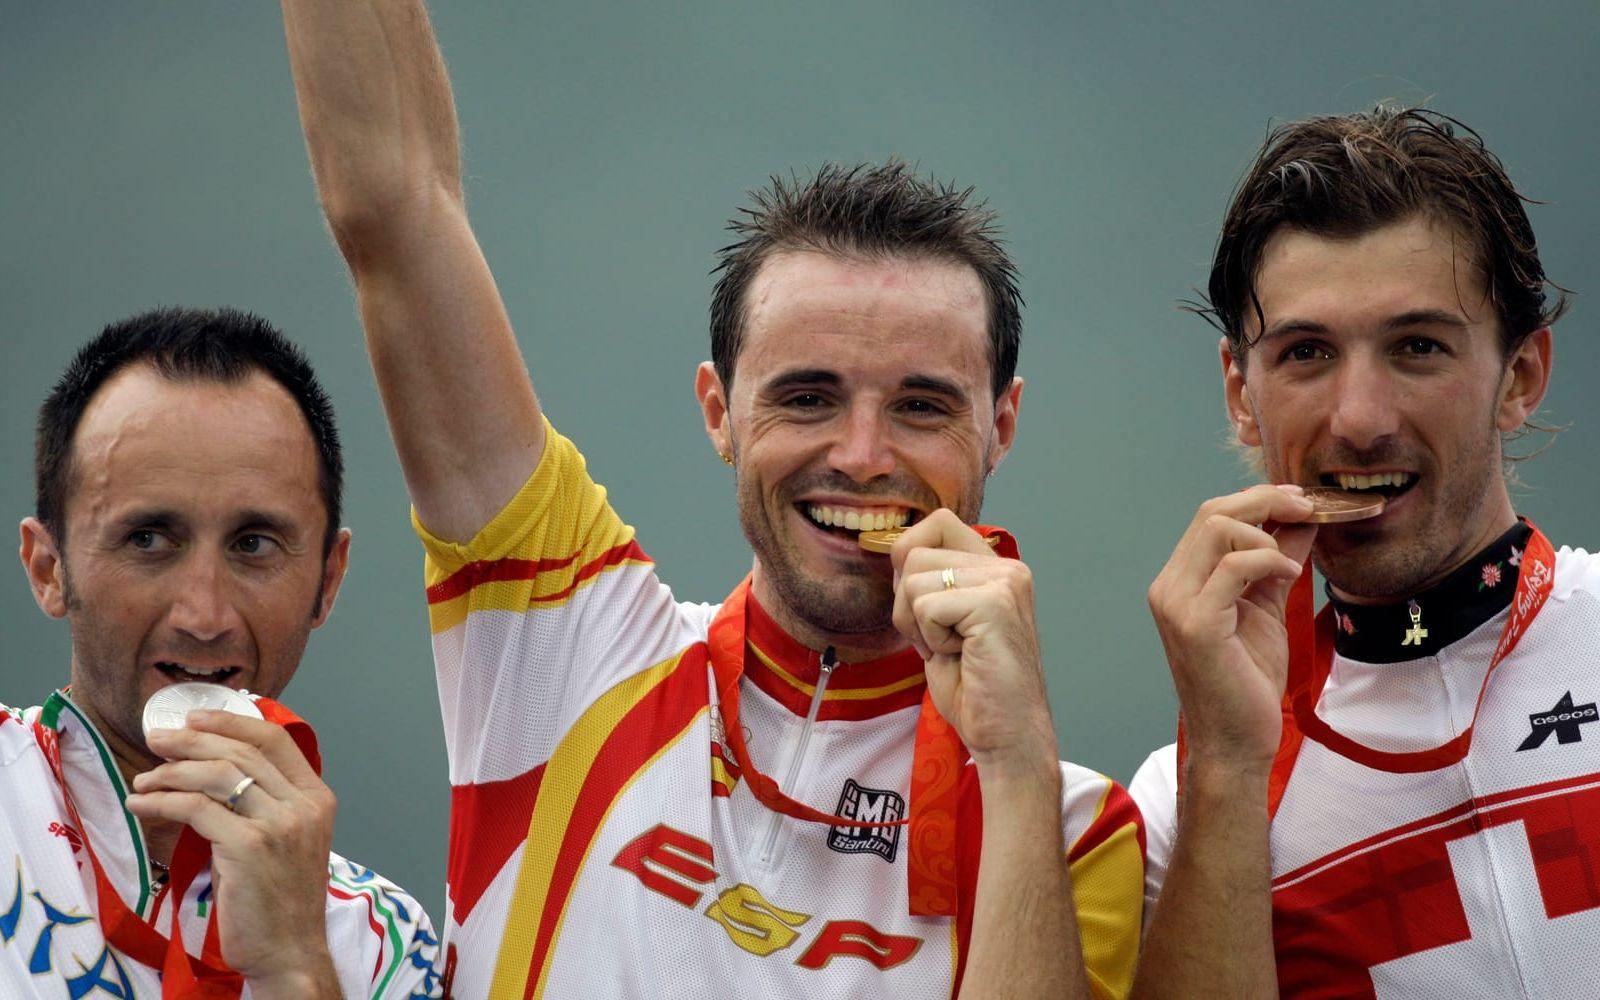 2008 slutade Rebellin (till vänster) tvåa på OS men han fråntogs medaljen efter att ha lämnat ett positivt dopningstest. 